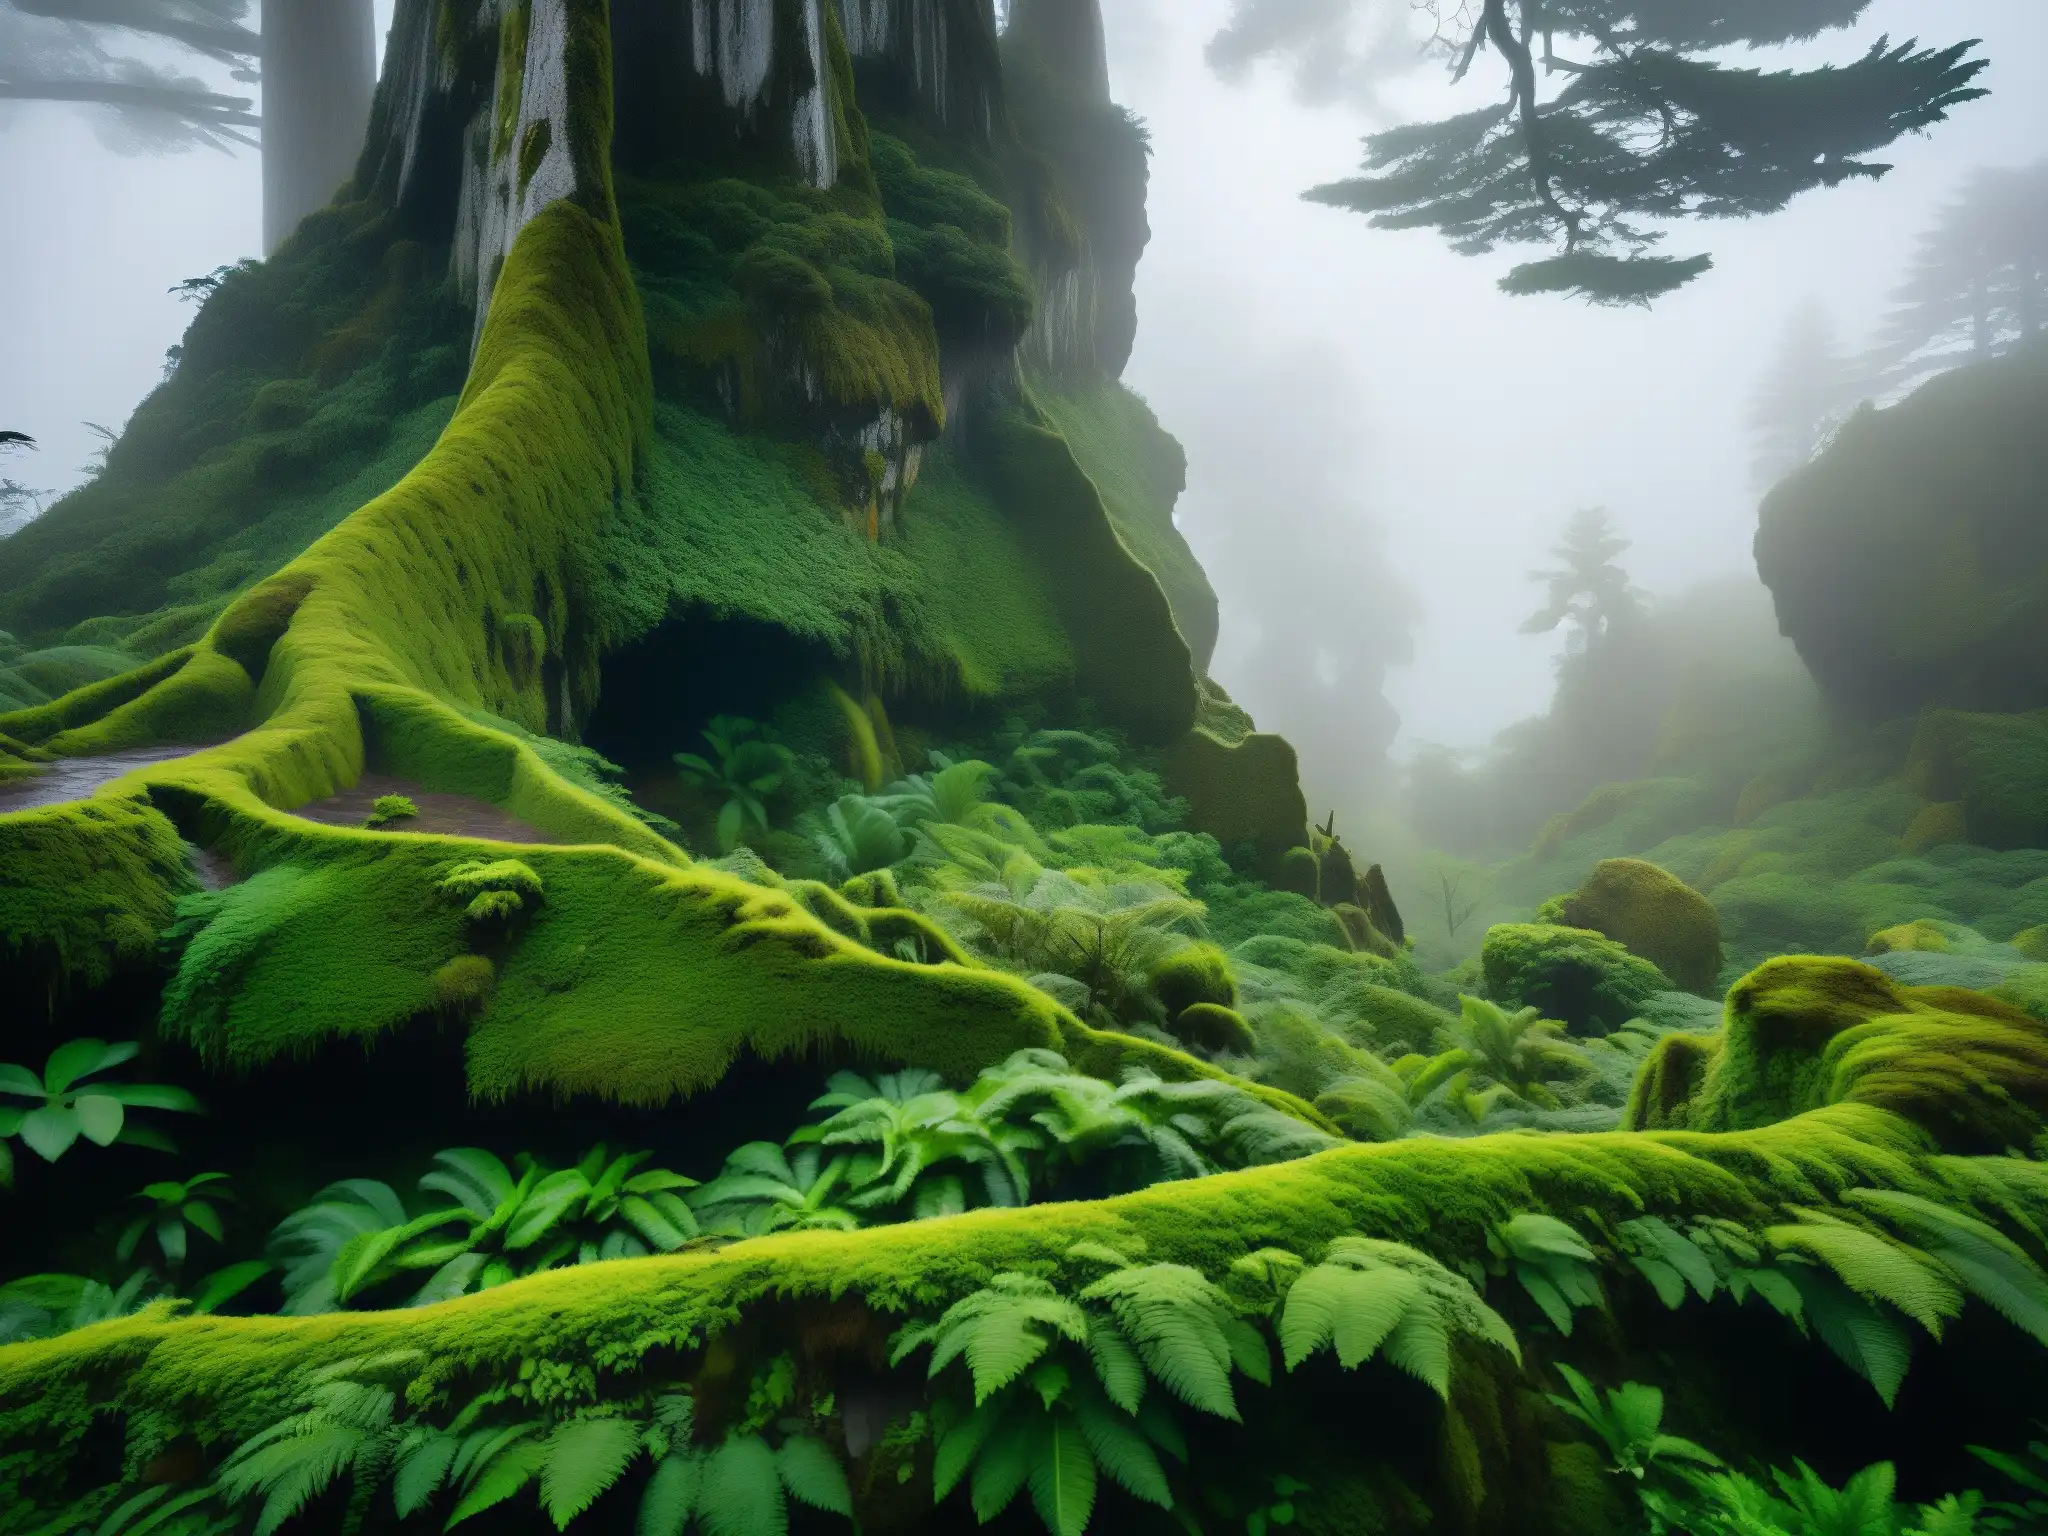 Un bosque denso y exuberante en Chiloé, Chile, con neblina tejiéndose entre los árboles antiguos, evocando la leyenda chilota del Trauco